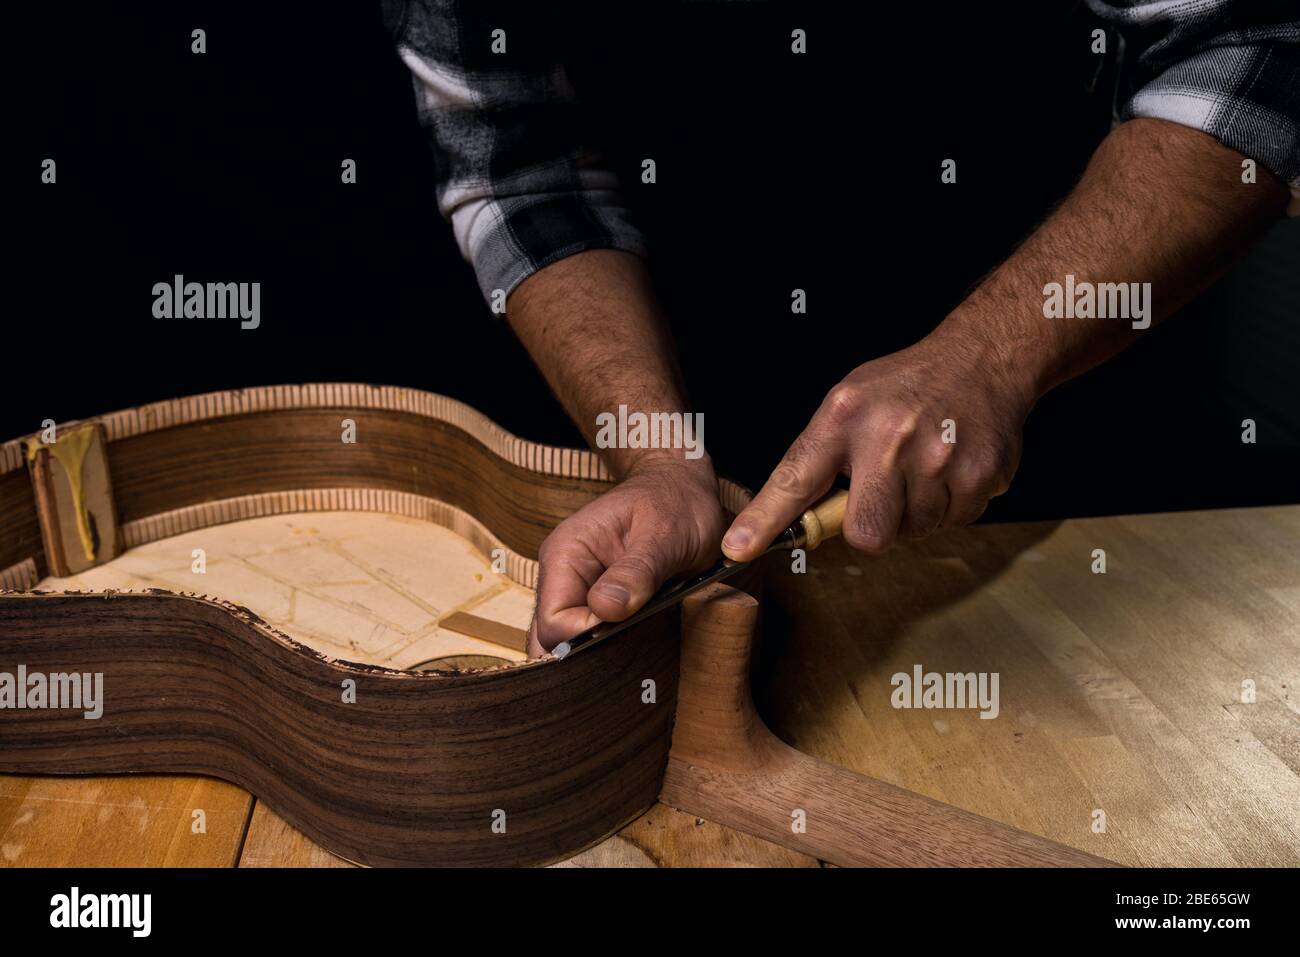 Homme faisant une guitare. Mains dans le maillot de secours en bois. Outil gouge. Fond noir foncé Banque D'Images